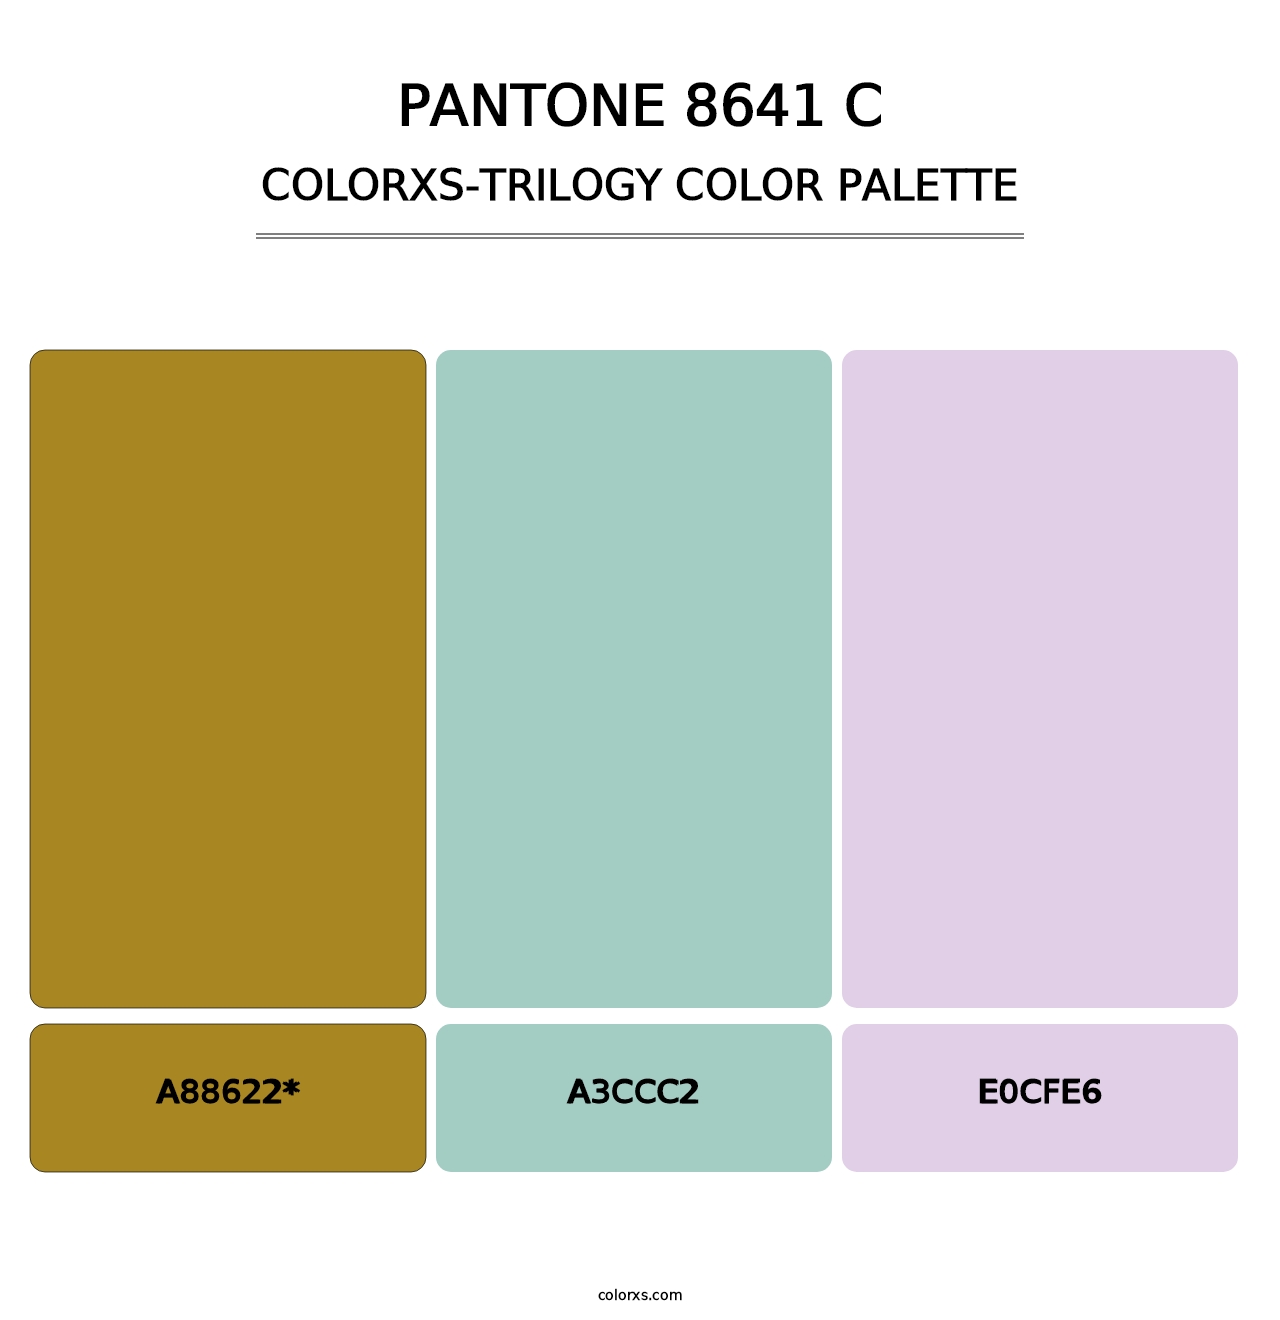 PANTONE 8641 C - Colorxs Trilogy Palette